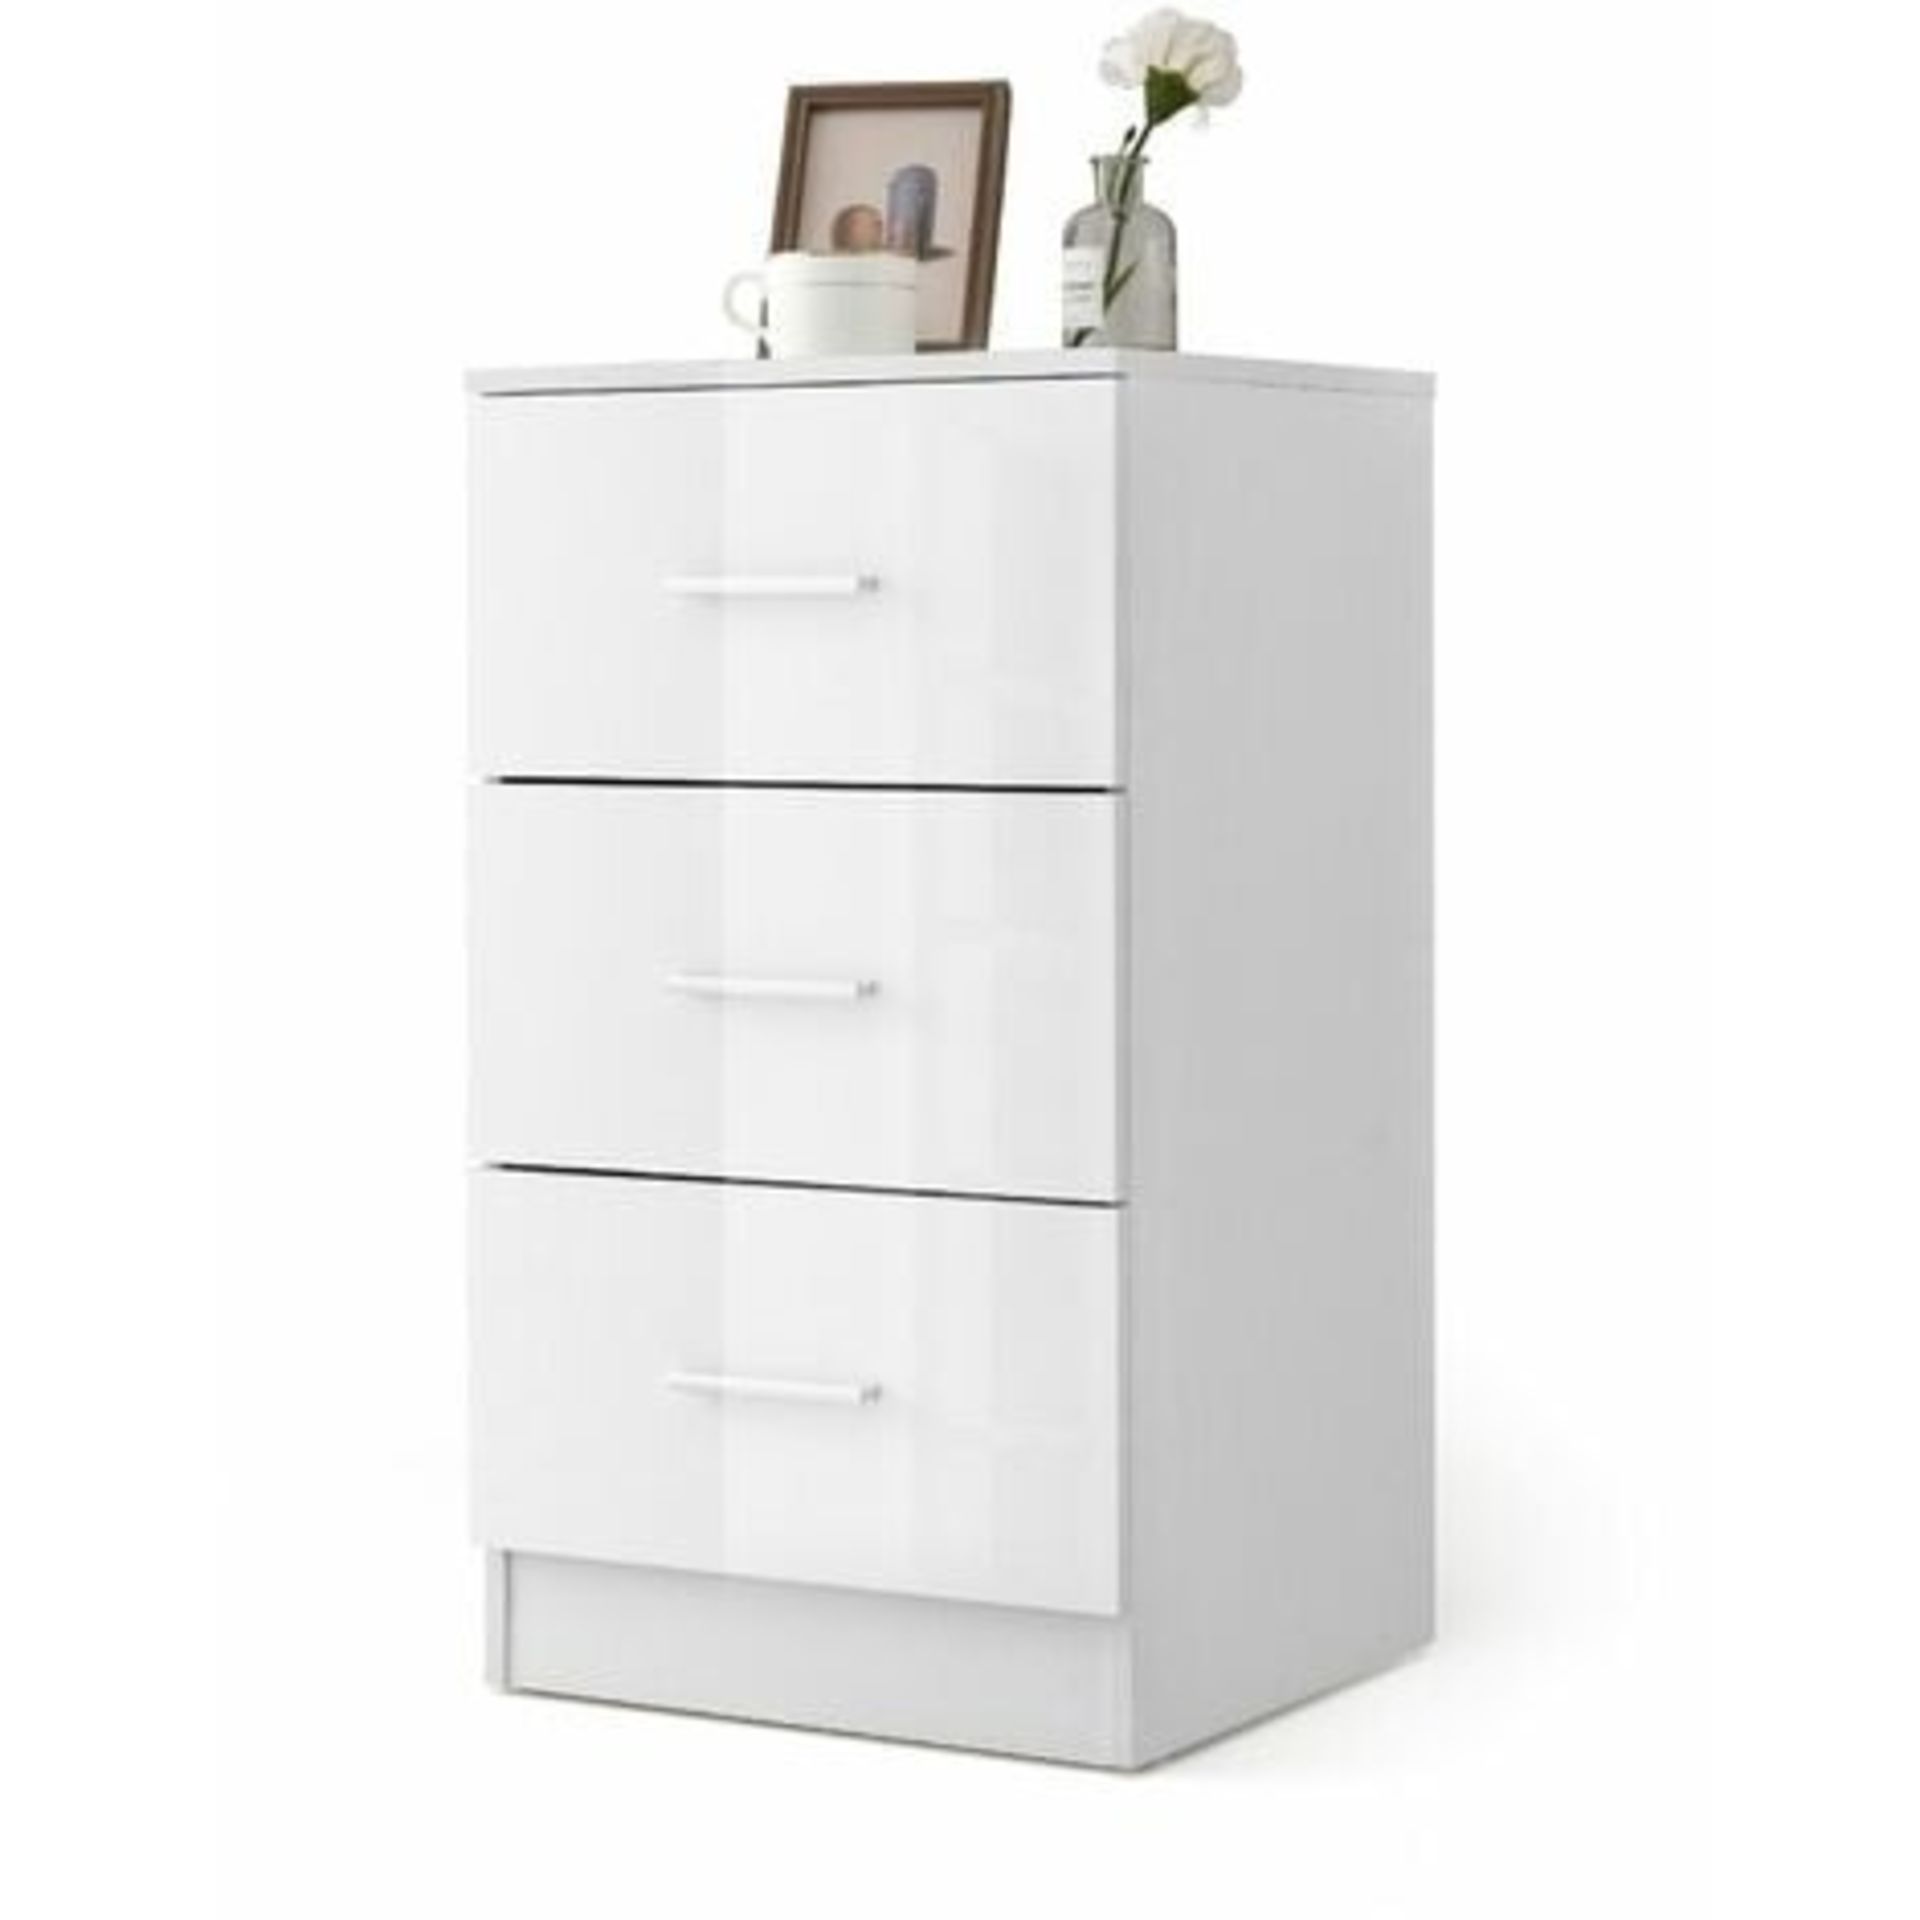 3-Drawer Chest Storage Cabinet Dresser Freestanding Night Stand Organizer - ER53